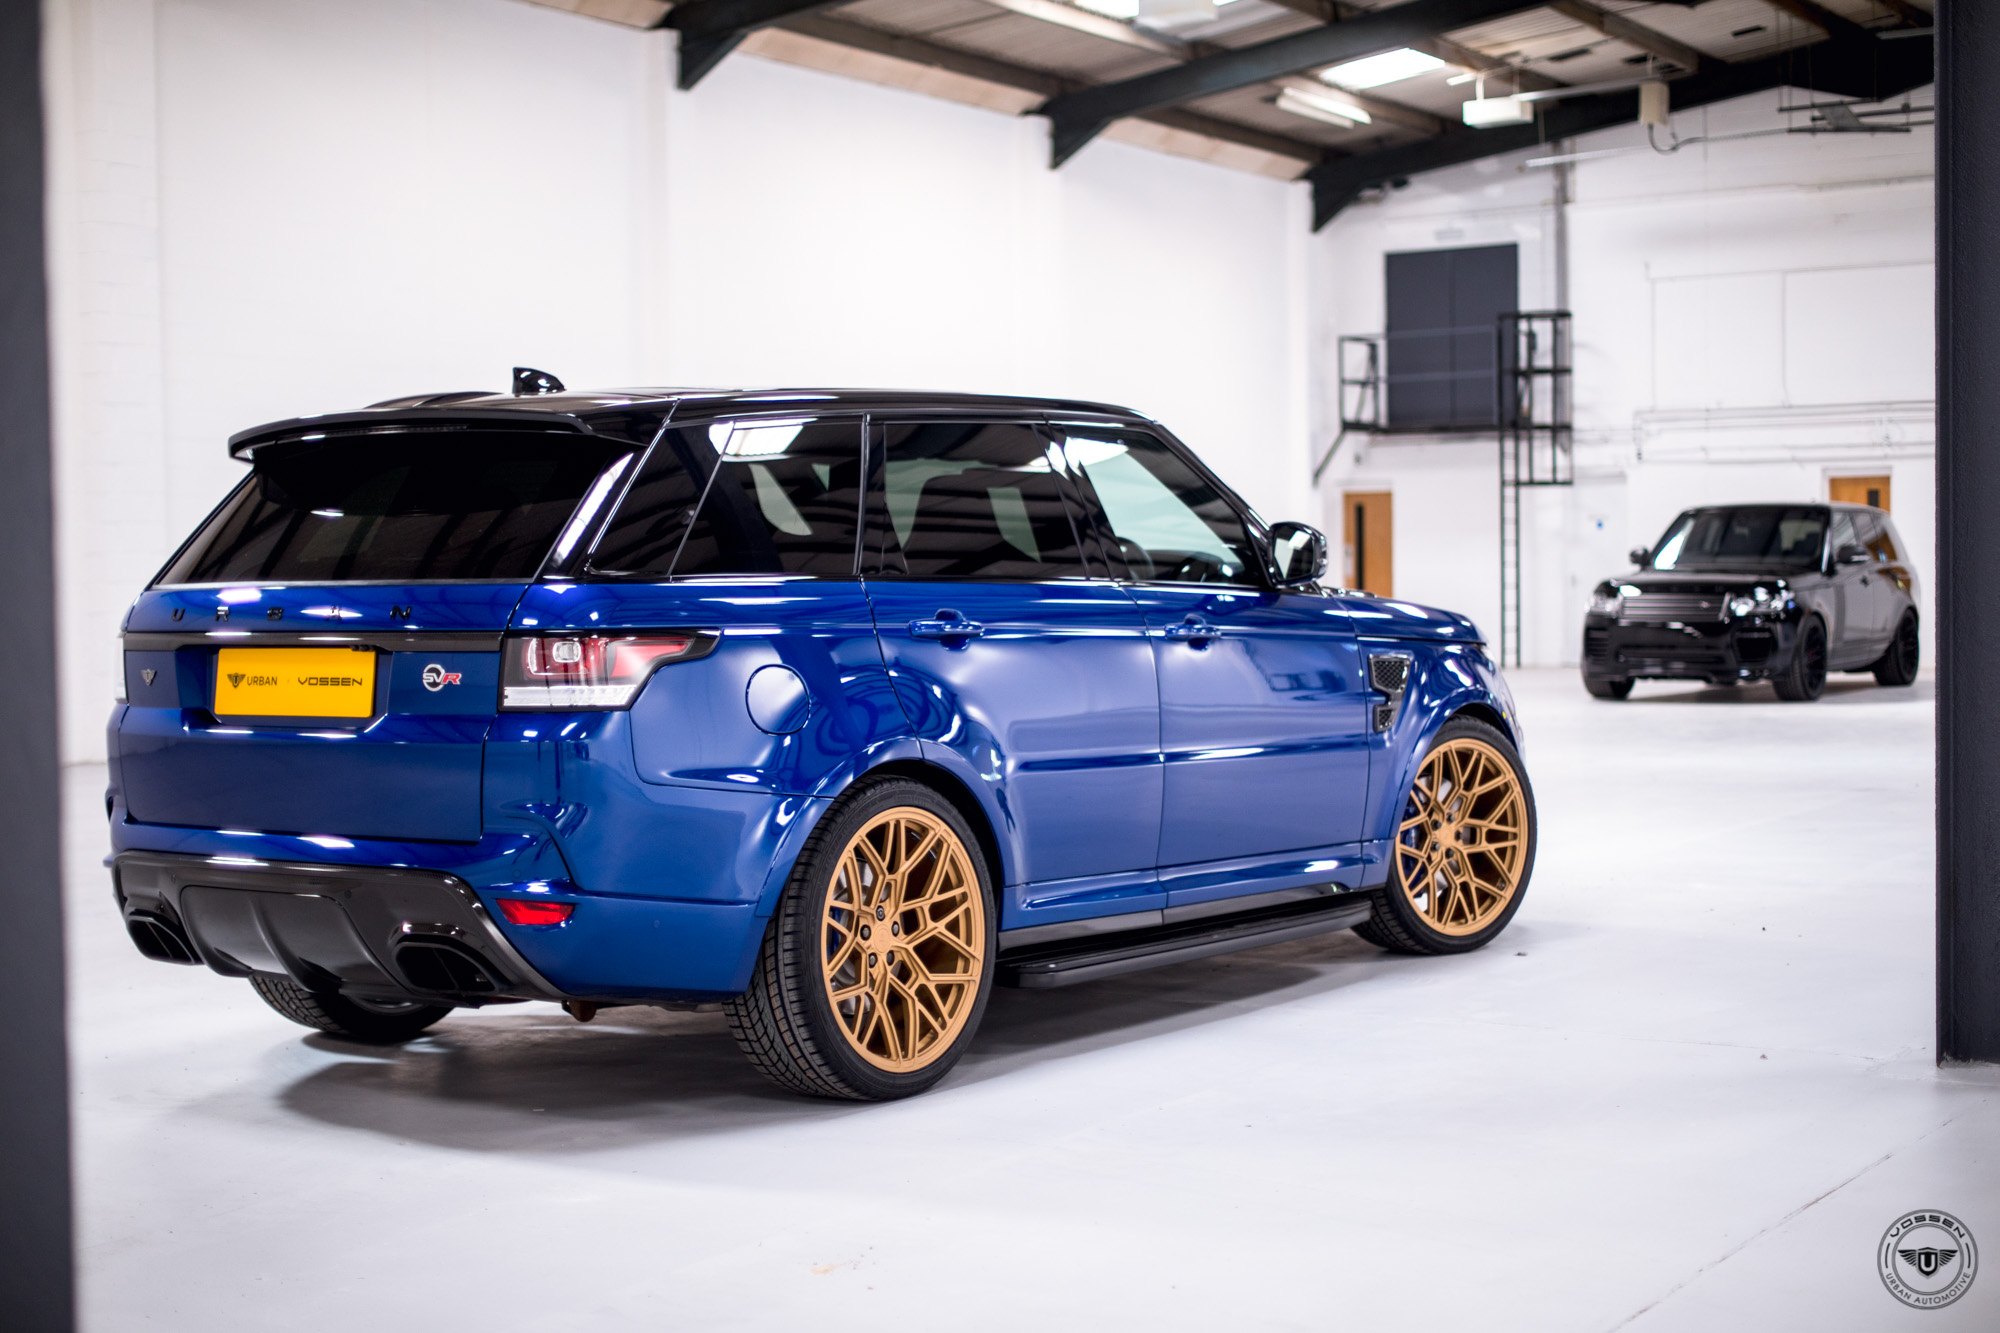 Blue Range Rover Sport with Satin Gold Forged Vossen Wheels - Photo by Vossen